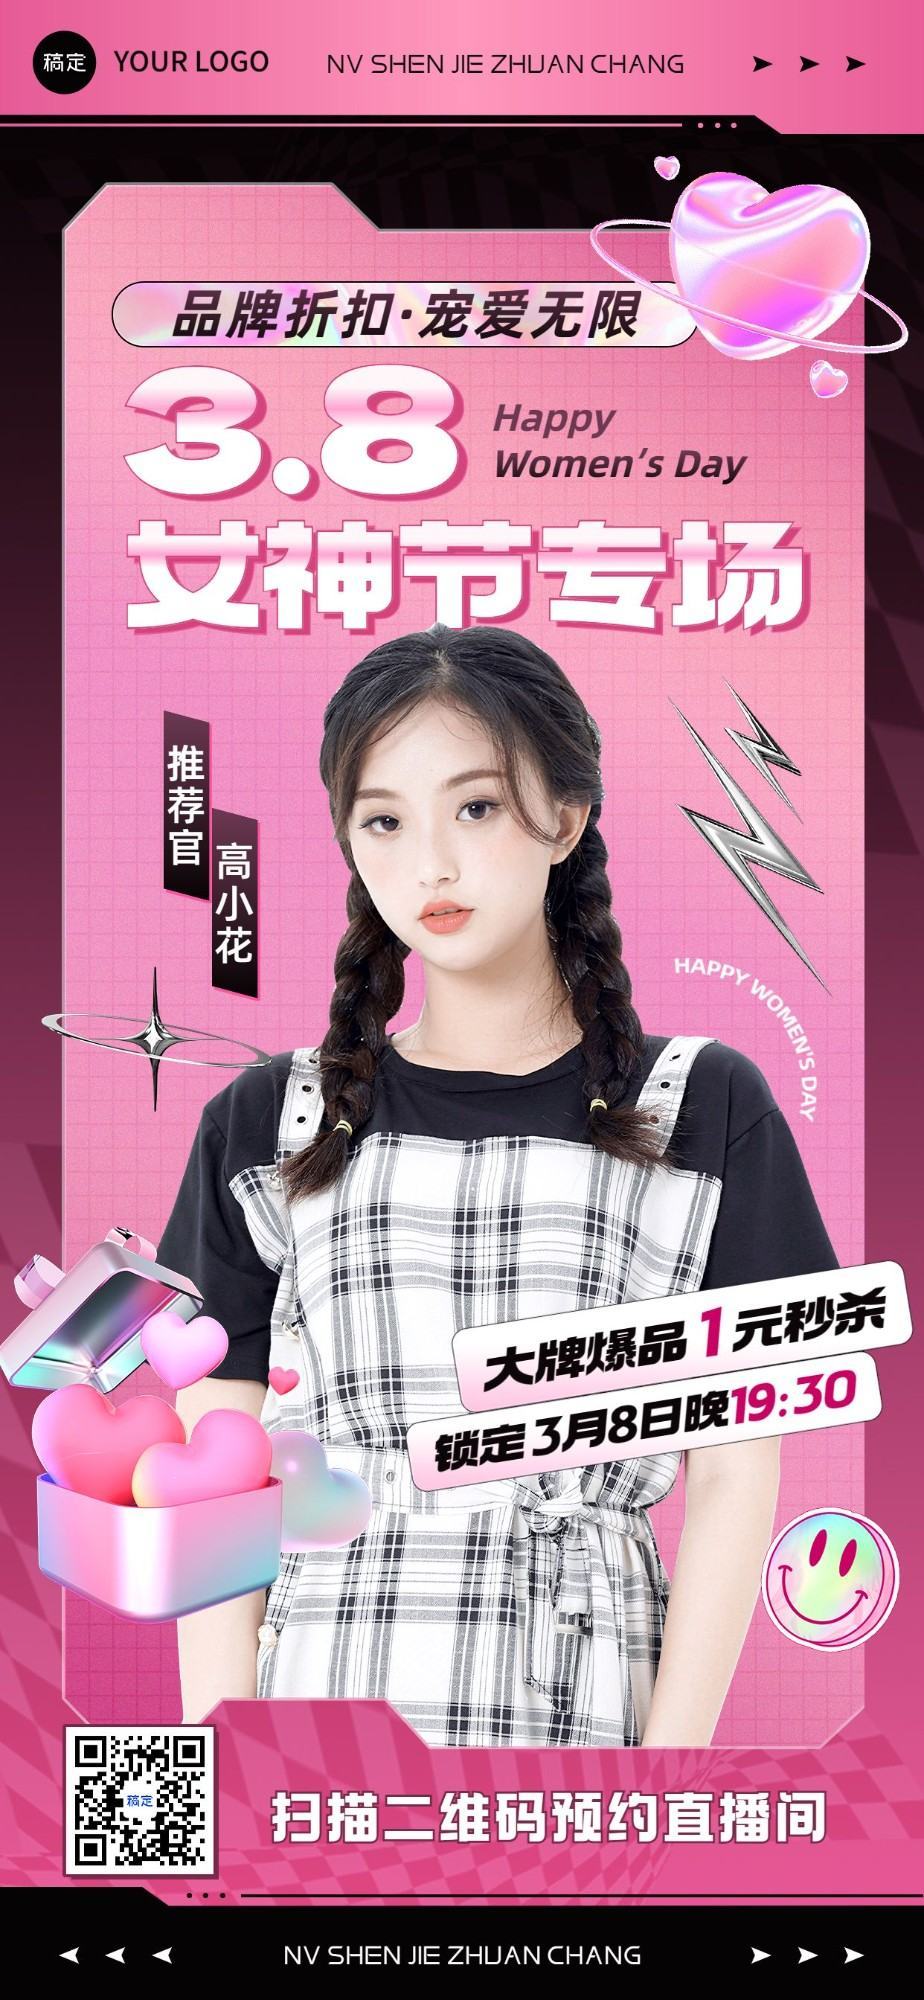 Poster dọc toàn màn hình tiếp thị ngày lễ chung của phụ nữ - GenZ Academy-GenZ Academy